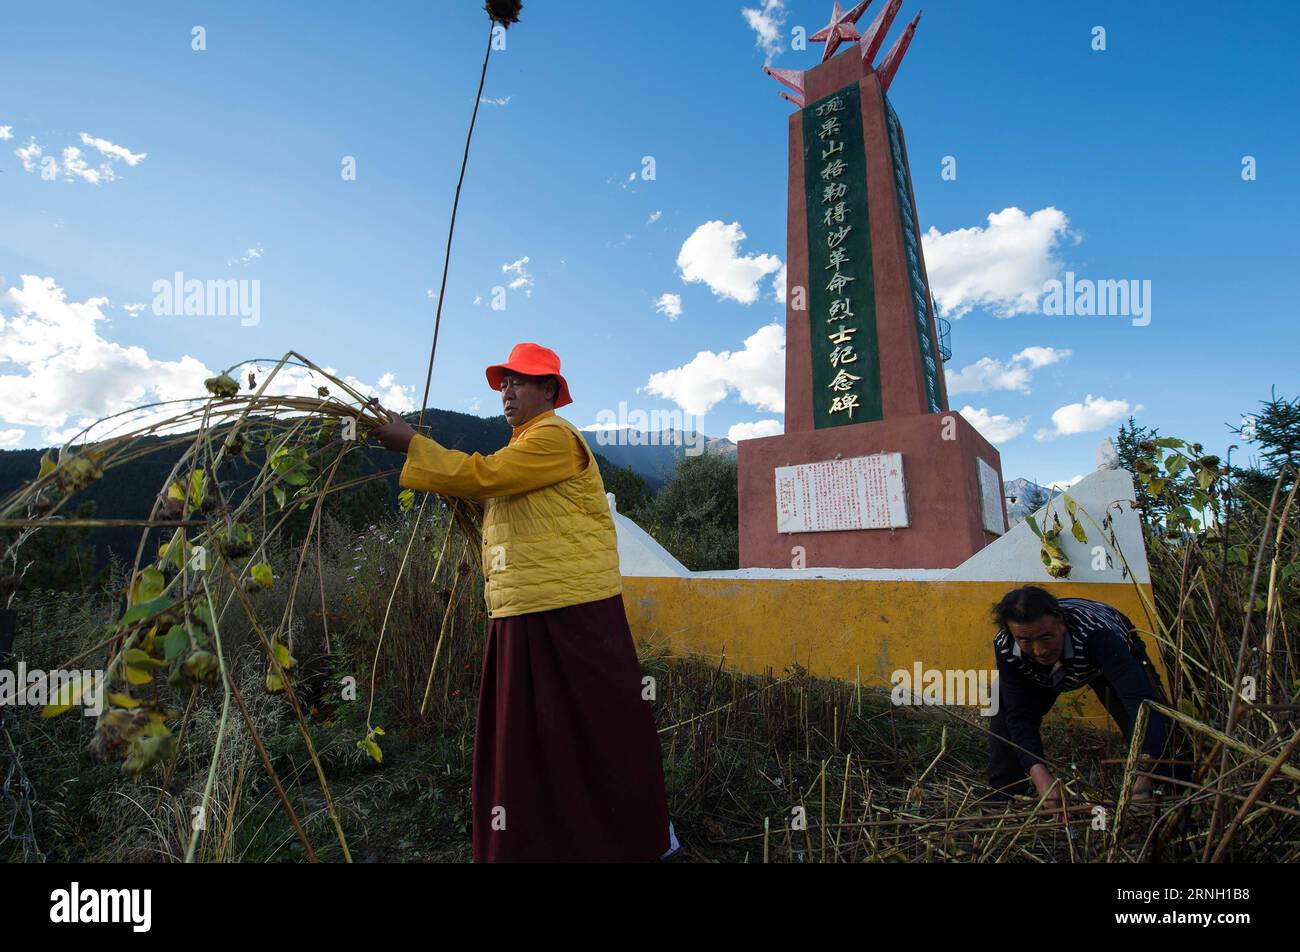 (161021) -- DANBA, 21 octobre 2016 -- Bouddha vivant Danbei Jiangcan broute le champ autour d'une tombe pour les martyrs de l'Armée rouge au monastère de Ding Guo Shan dans le comté de Danba, préfecture autonome tibétaine de Ganzi, province du Sichuan du sud-ouest de la Chine, 18 octobre 2016. Entouré de couronnes ondulées de nuages, le monastère de Ding Guo Shan se trouve au sommet d'une montagne dans le comté reculé de Danba. Ce qui le rend unique est un bâtiment de monastère traditionnel de deux étages à côté du hall principal qui a été récemment peint en rouge et jaune. C'est une salle d'exposition du site de bataille de l'Armée rouge avec plus de 3 000 expositions rares en elle. Banque D'Images